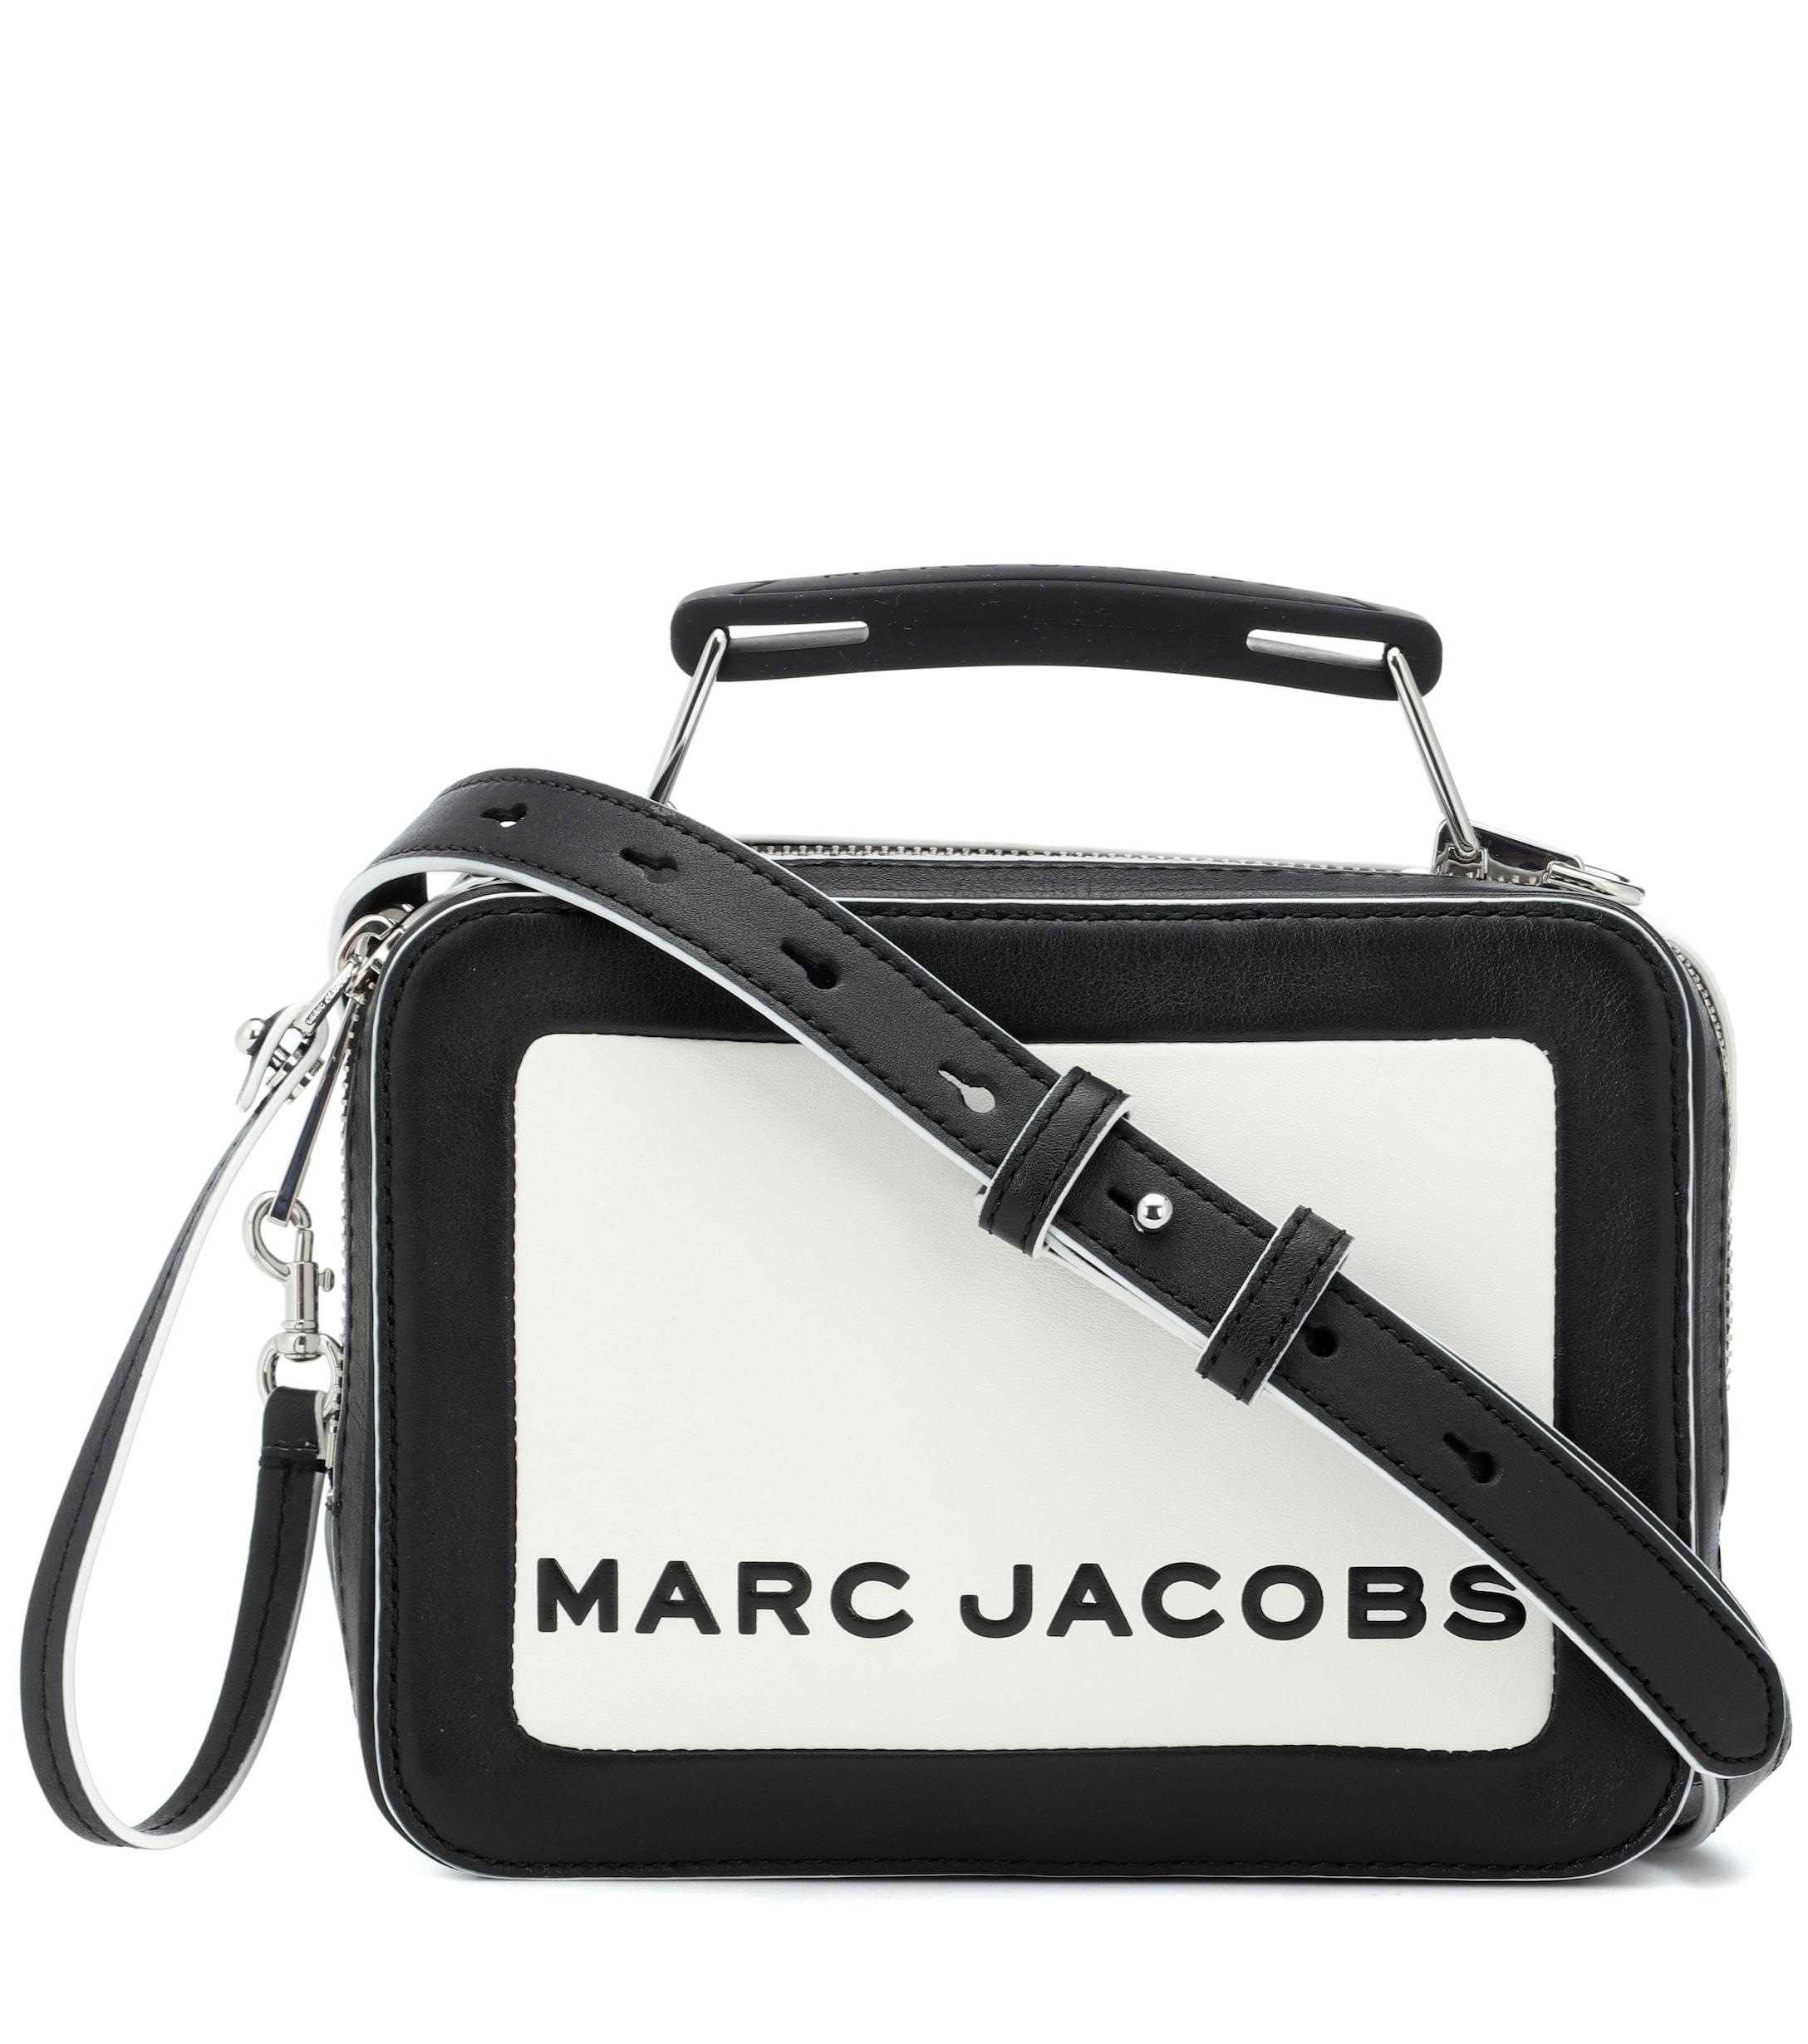 Marc Jacobs France - Sac Bandoulière Marc Jacobs Soldes